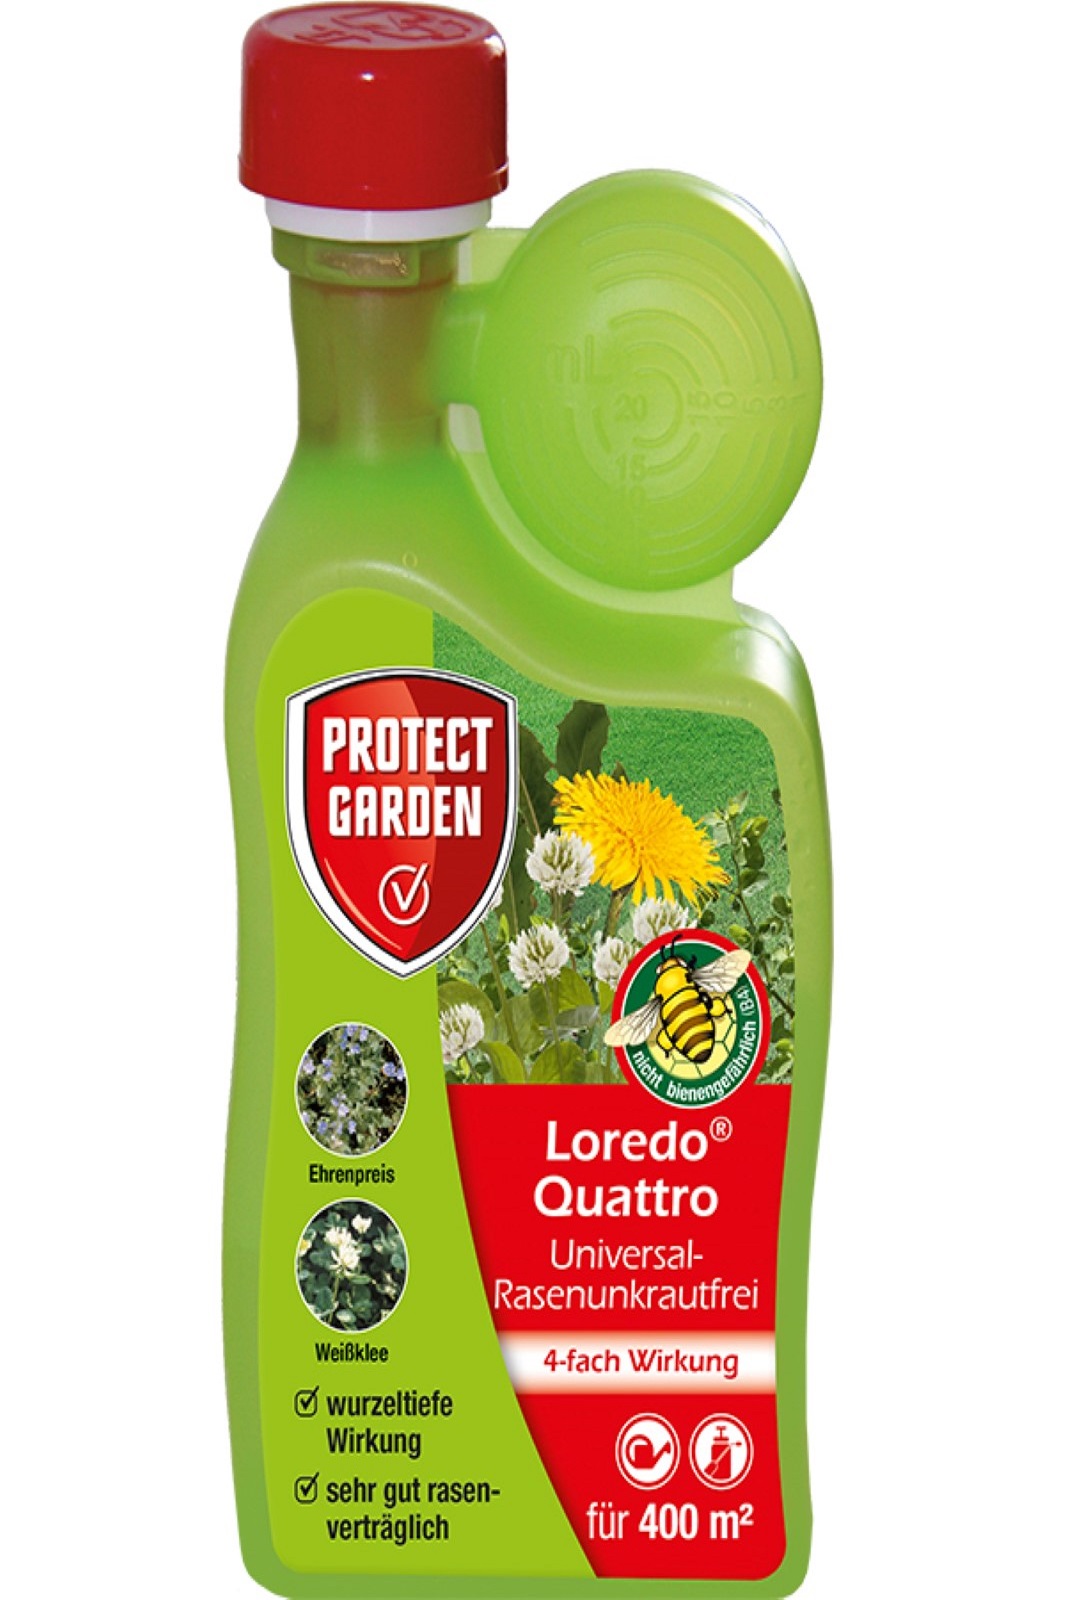 Protect Garden Loredo Quattro Universal Rasenunkrautfrei 4 x 400ml